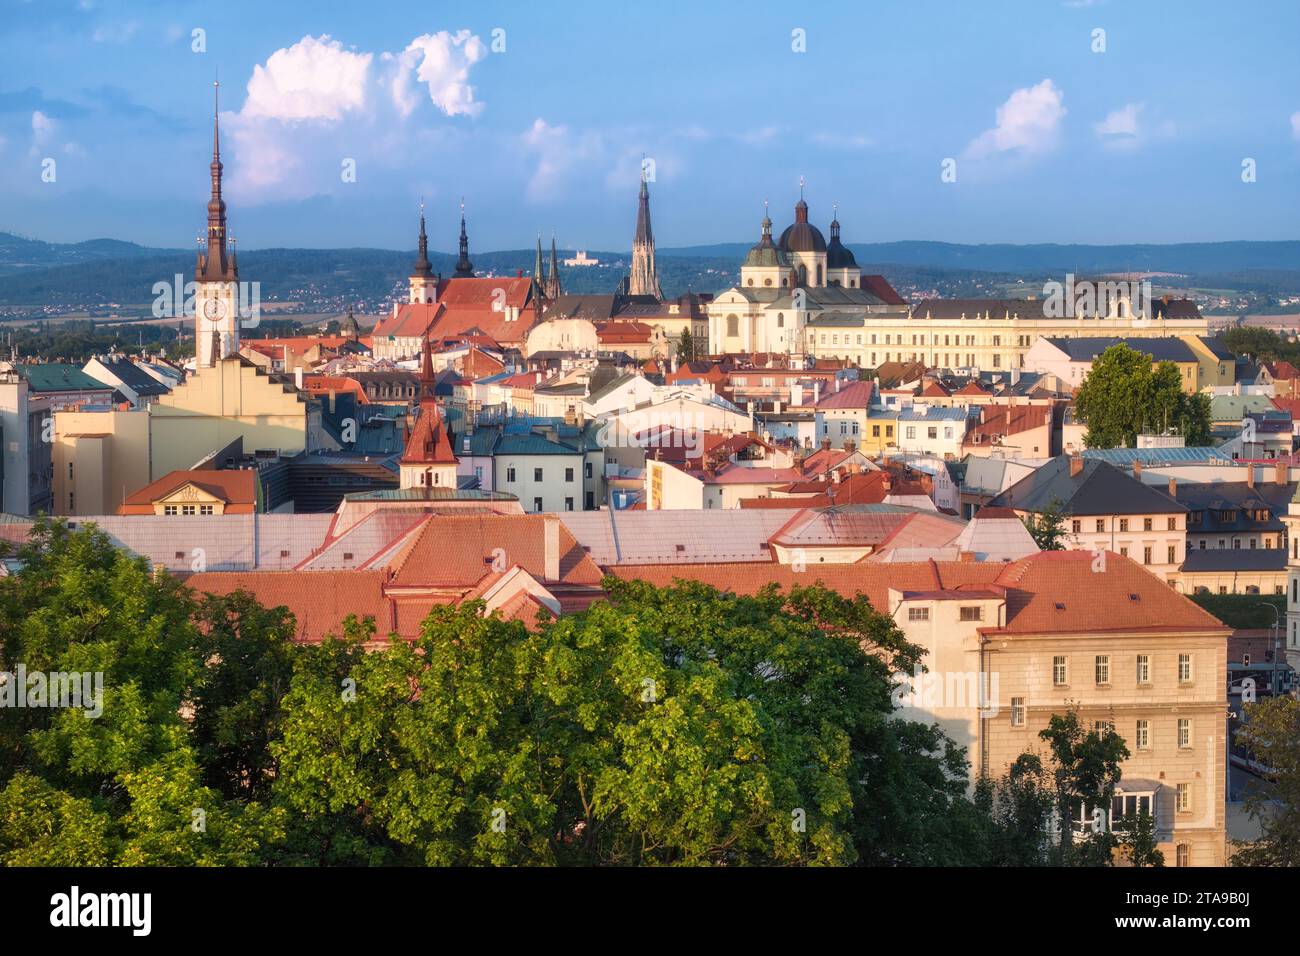 Panoramablick auf das historische Zentrum von Olomouc, die antike Stadt und Touristenattraktion in Mittelmähren, Tschechische Republik. Mittelalterliche Denkmäler, UN Stockfoto